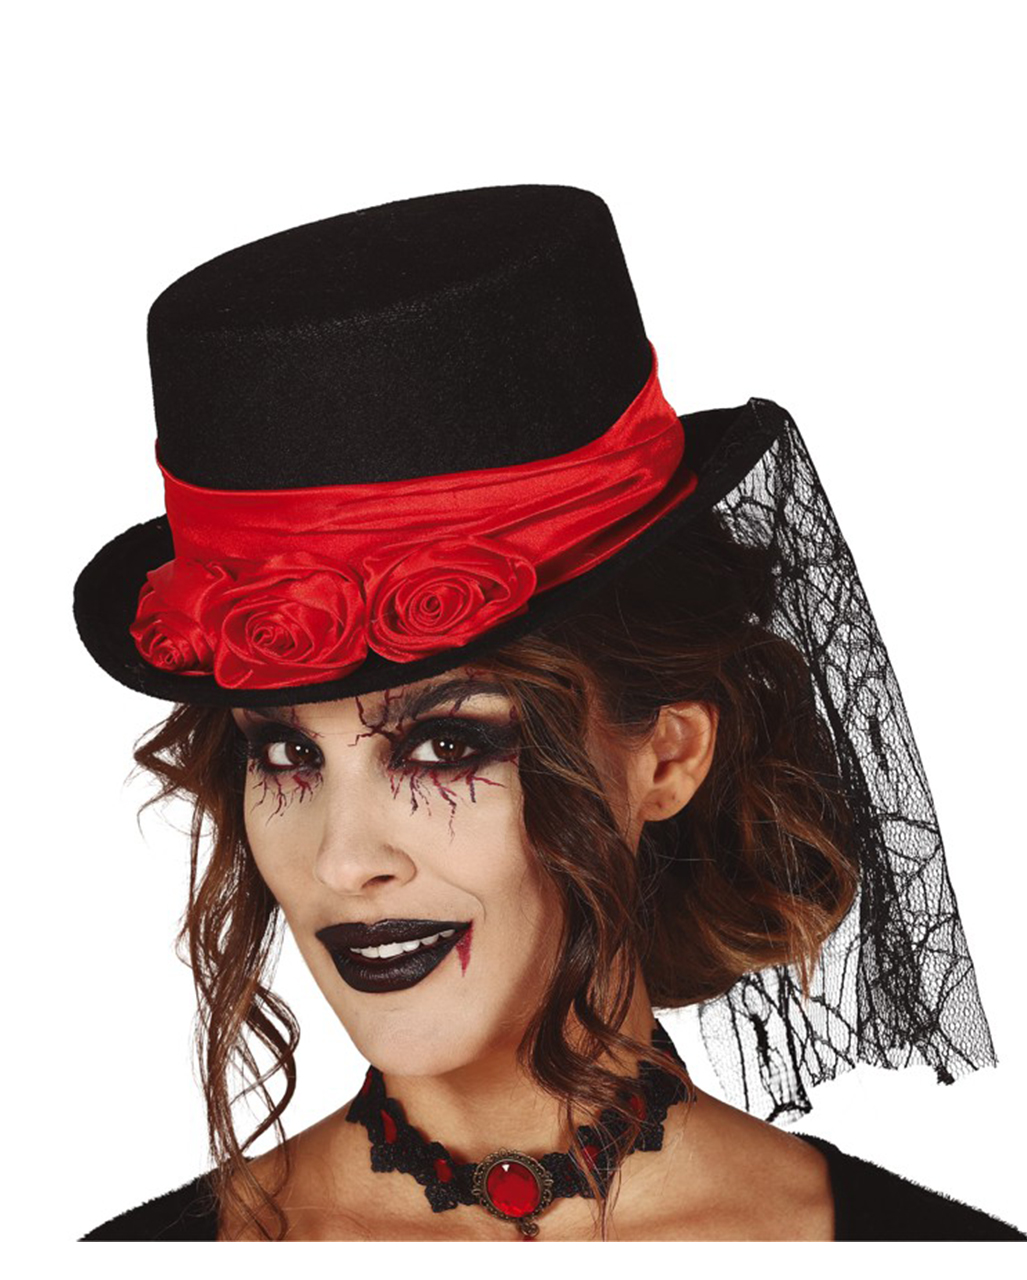 Mini Cocktail Victorian Black Red Top Hat w/ Veil Steampunk Gothic Widow Vampire 